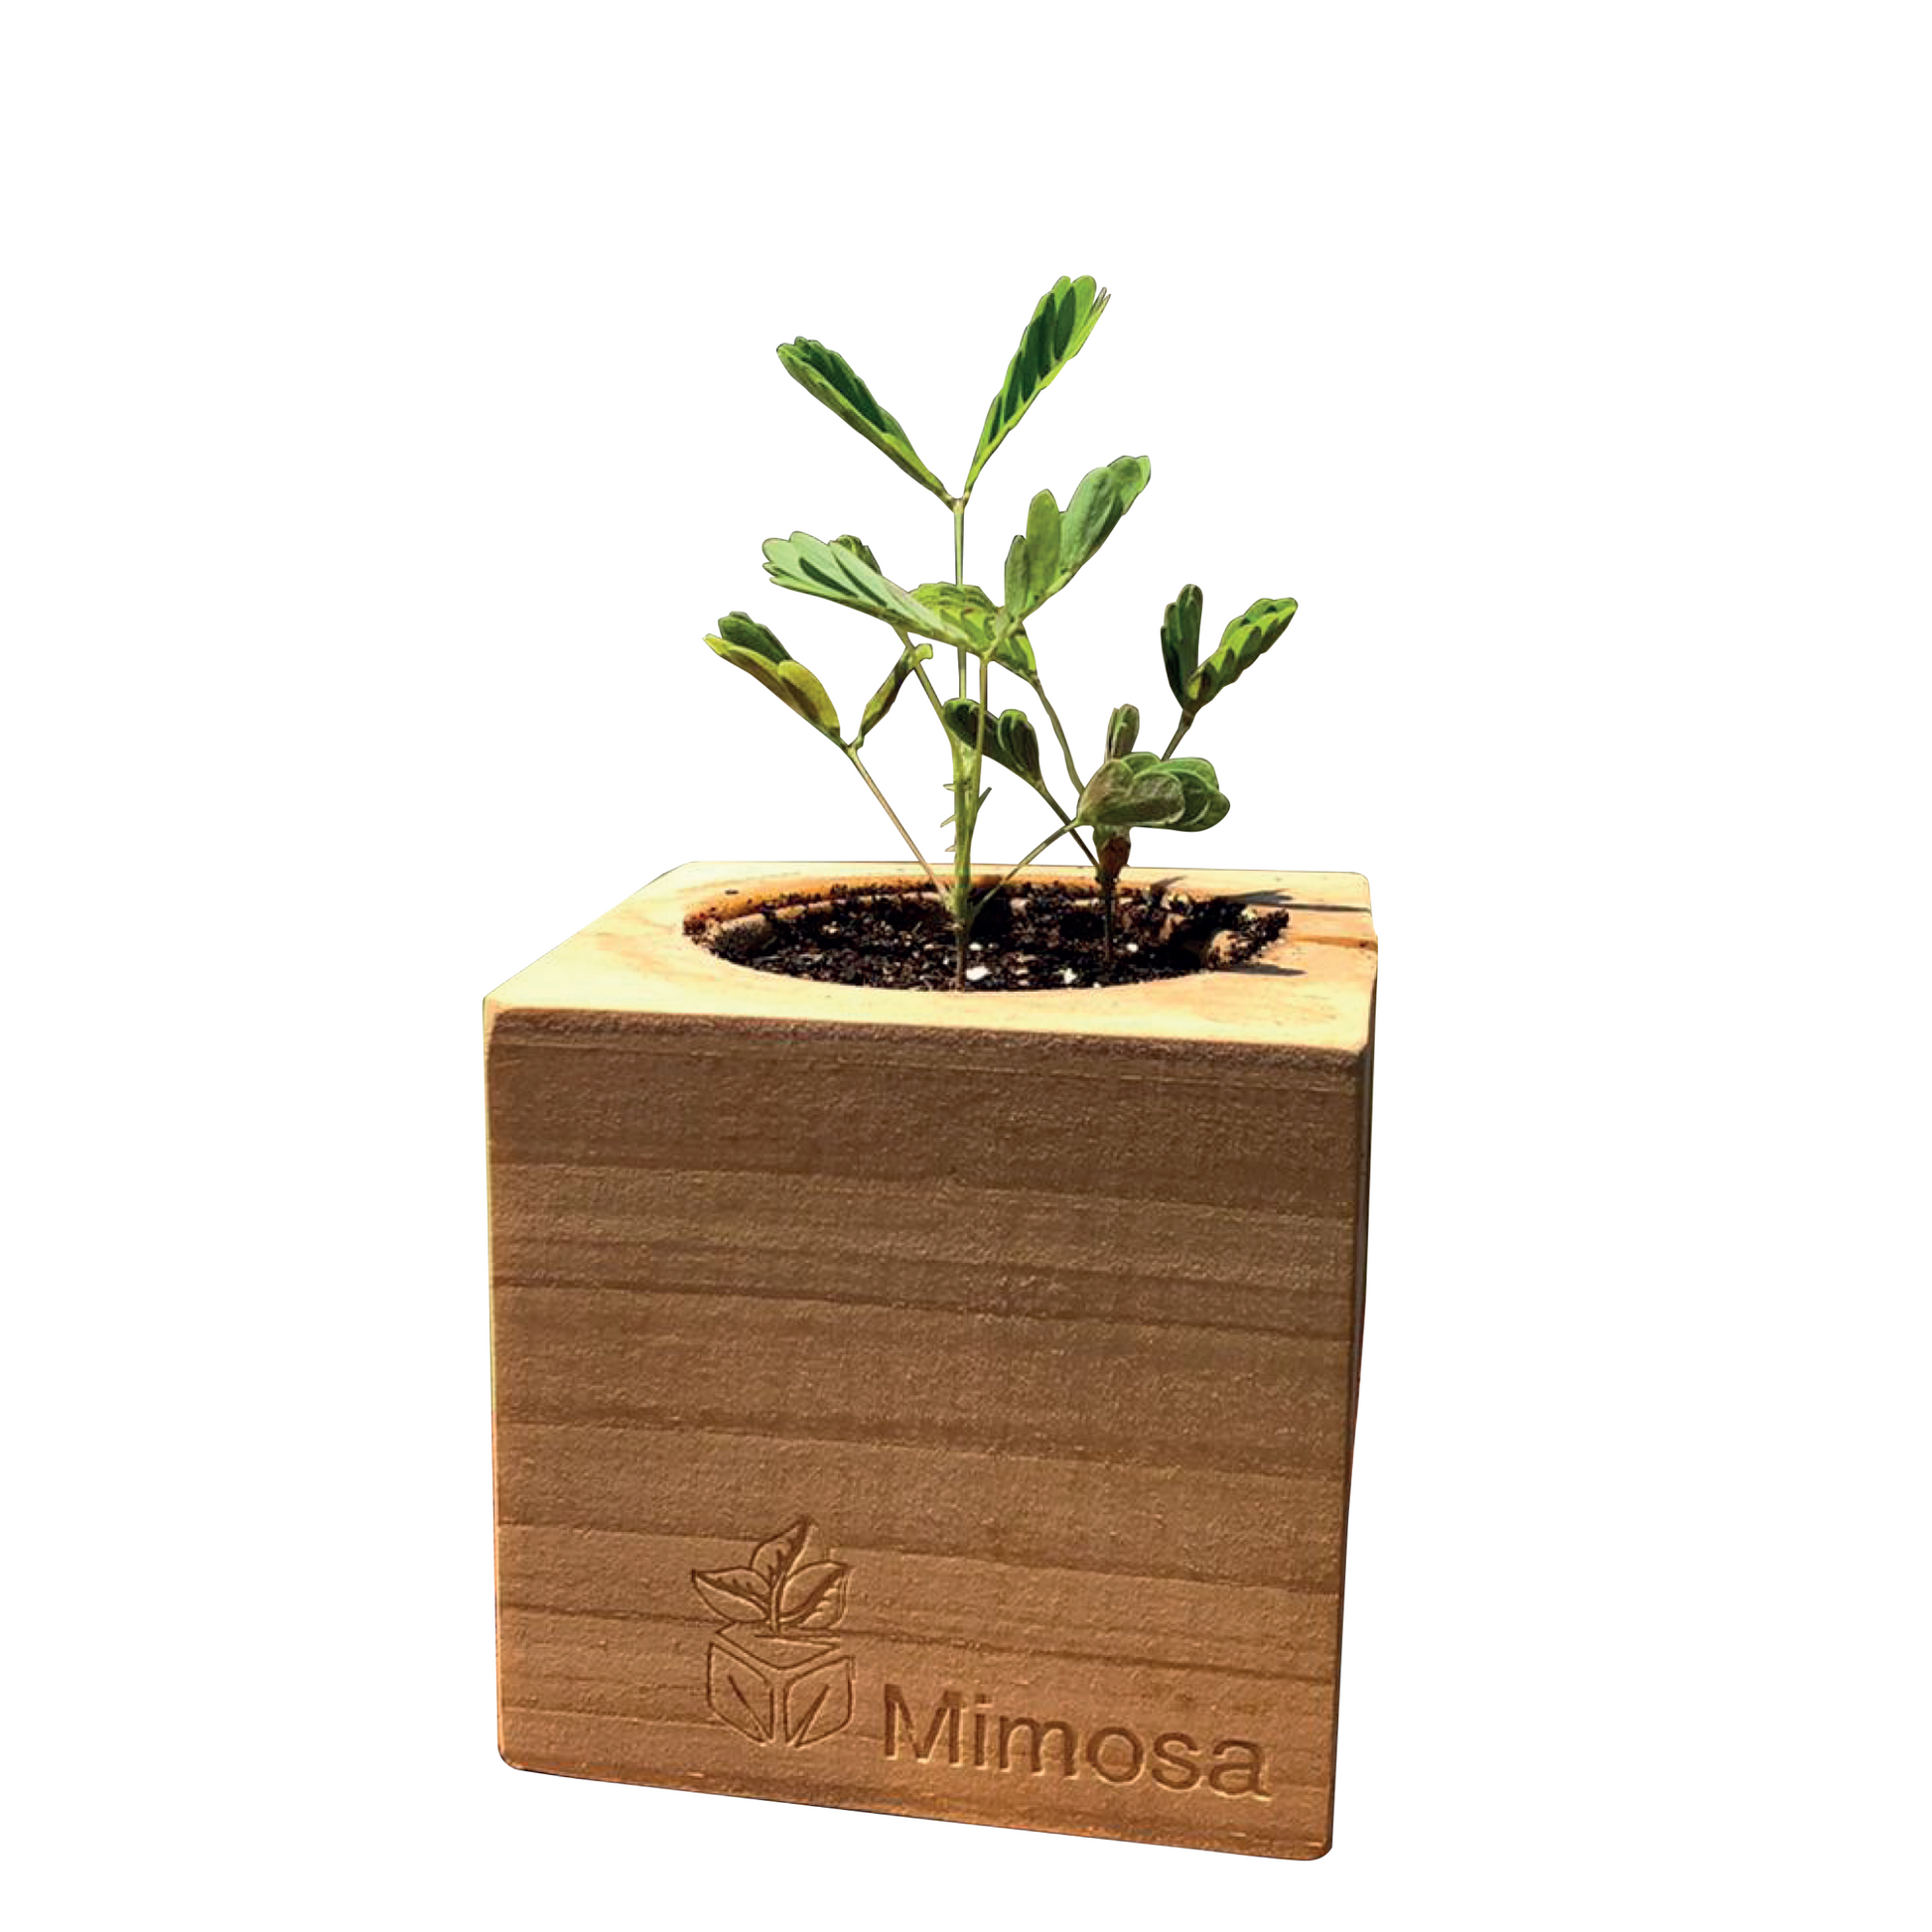 Grow Kit - Mimosa - Sprigbox